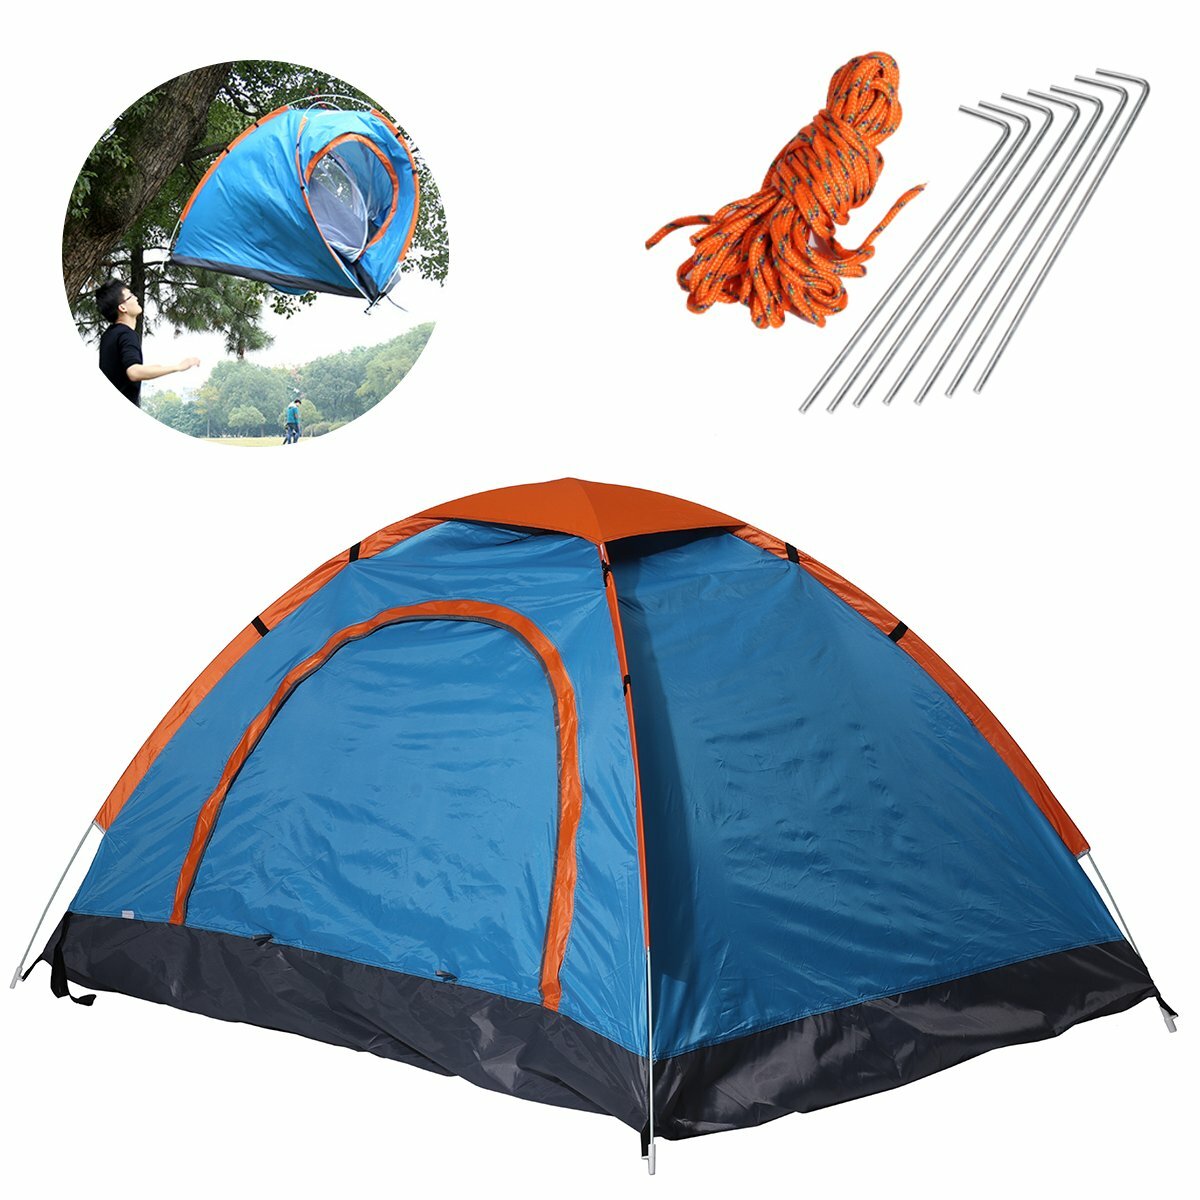 Палатка для кемпинга на 2 человека, складная, водонепроницаемая, ультралегкая, солнцезащитный тент, для отдыха на природе и походов